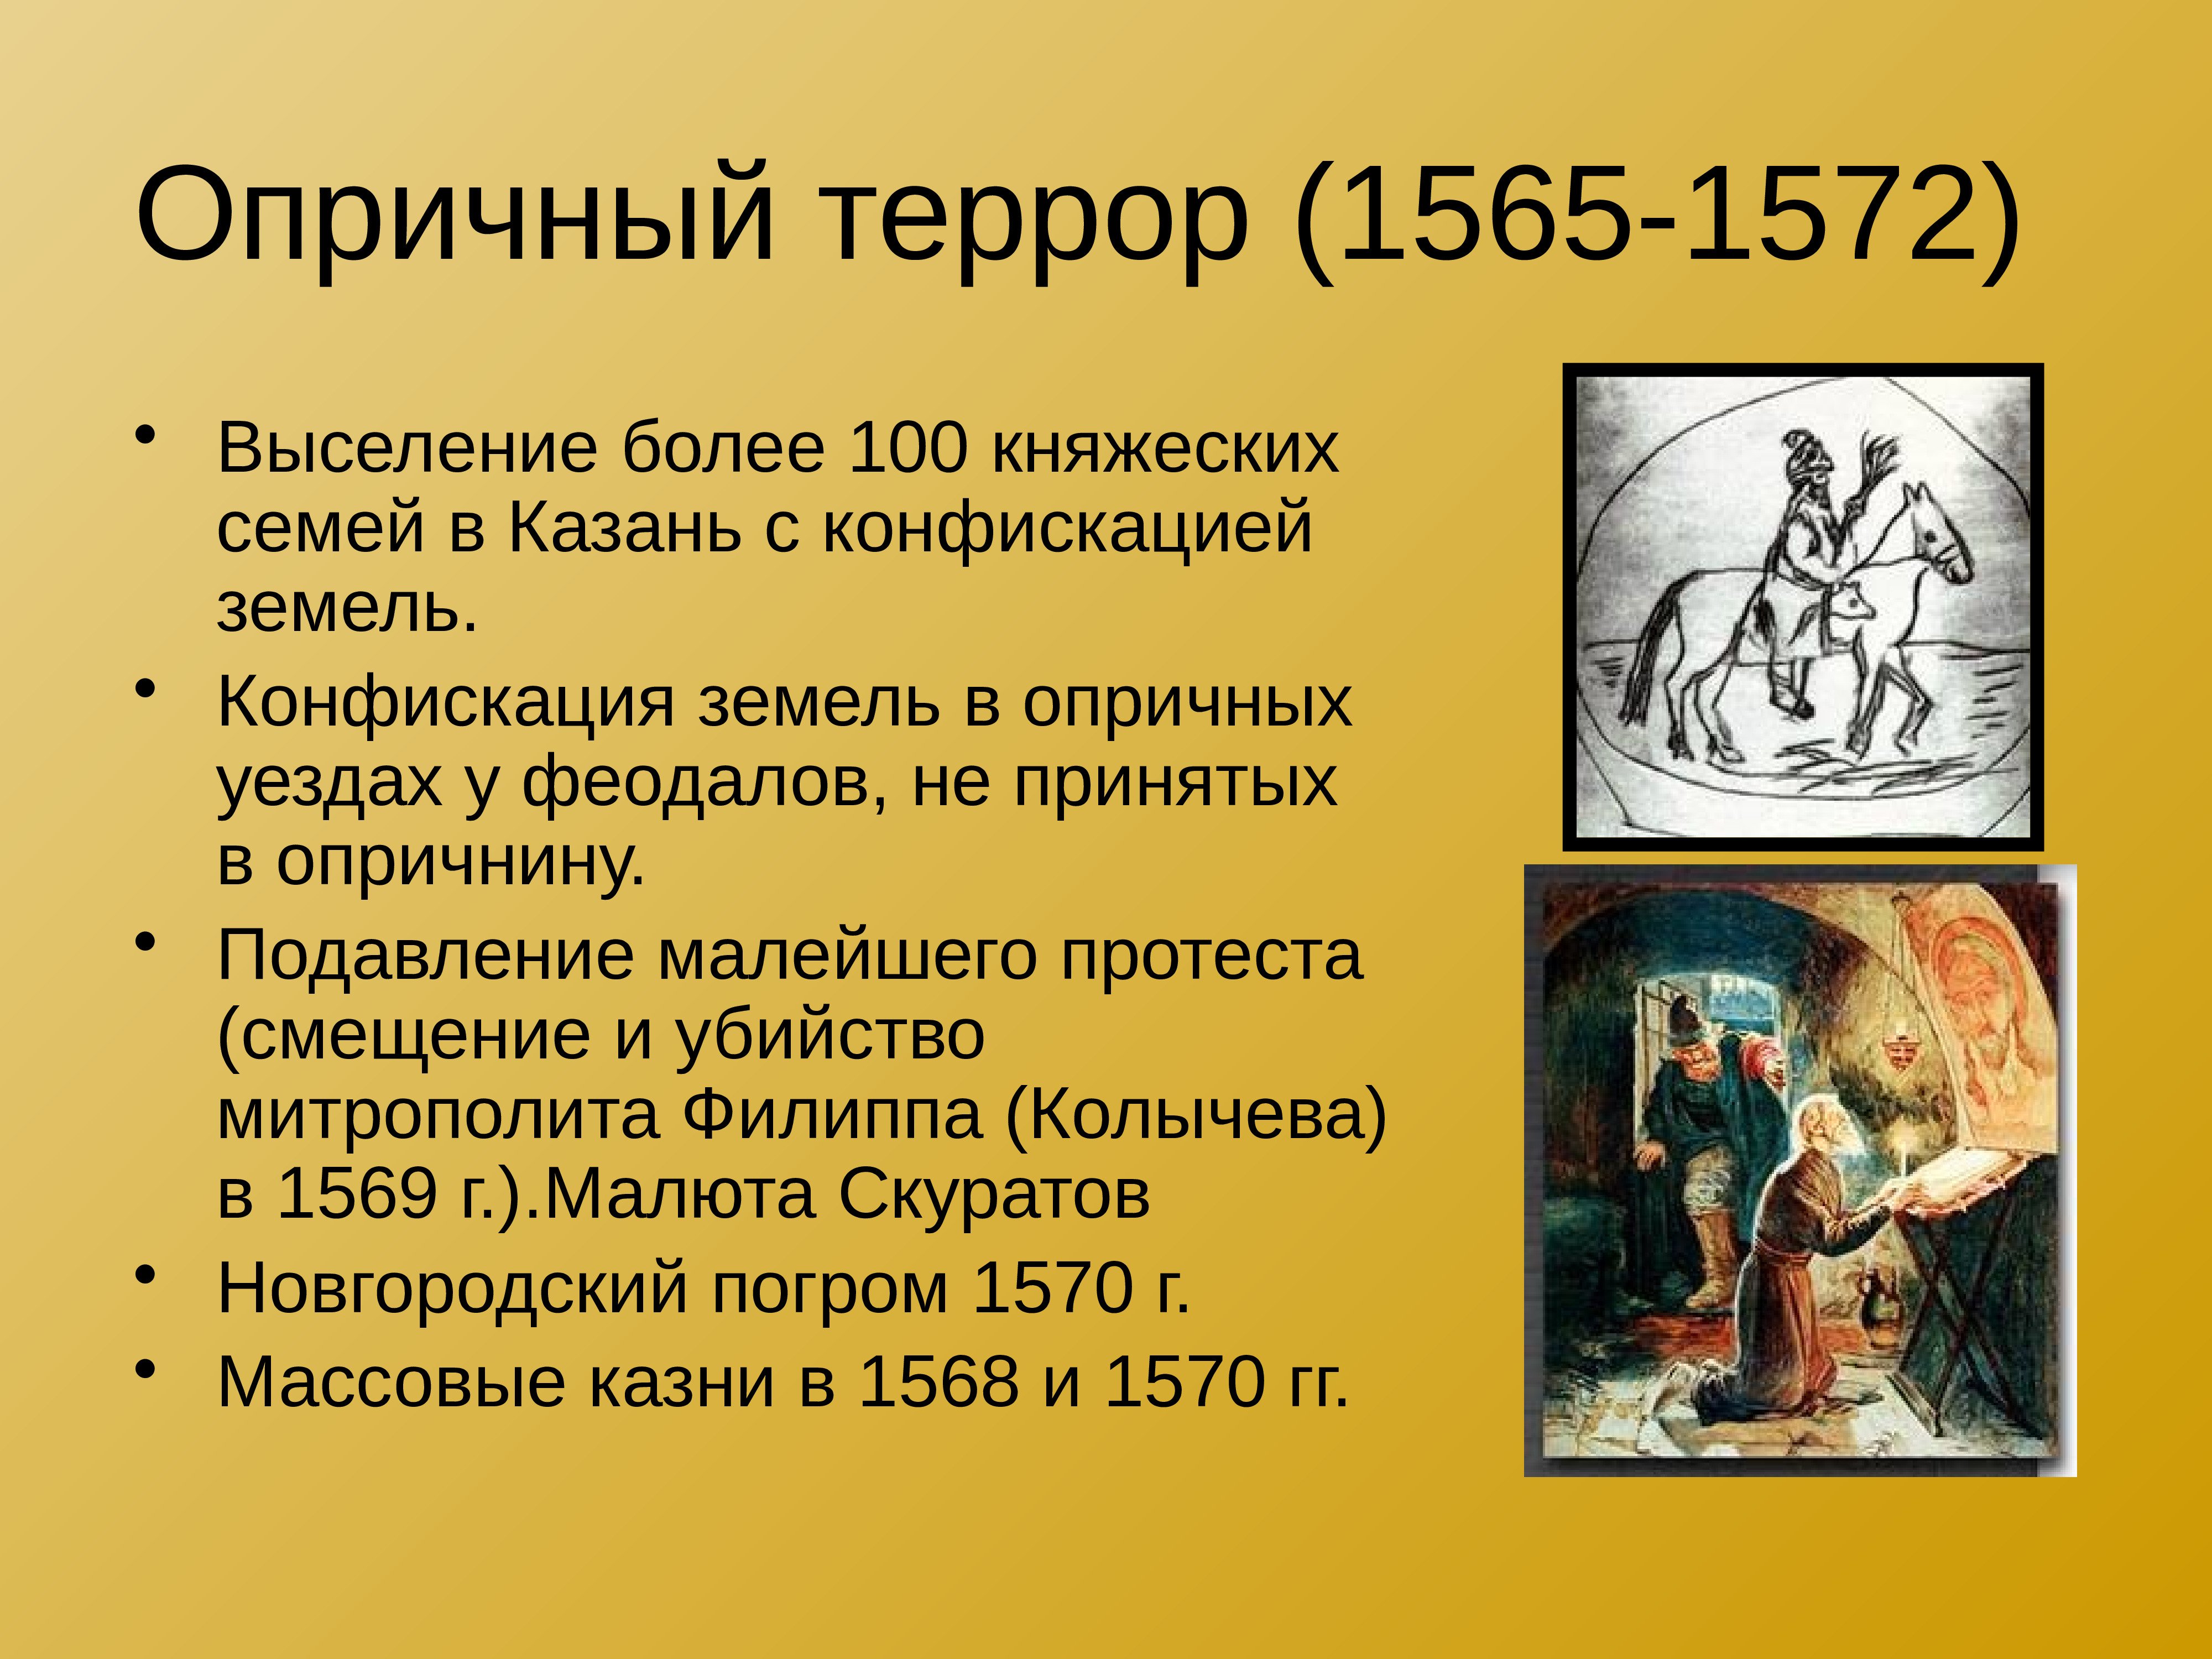 1565 1572 г. Опричный террор. Опричный террор Ивана Грозного. Террор при Иване Грозном. Примеры террора опричнины.